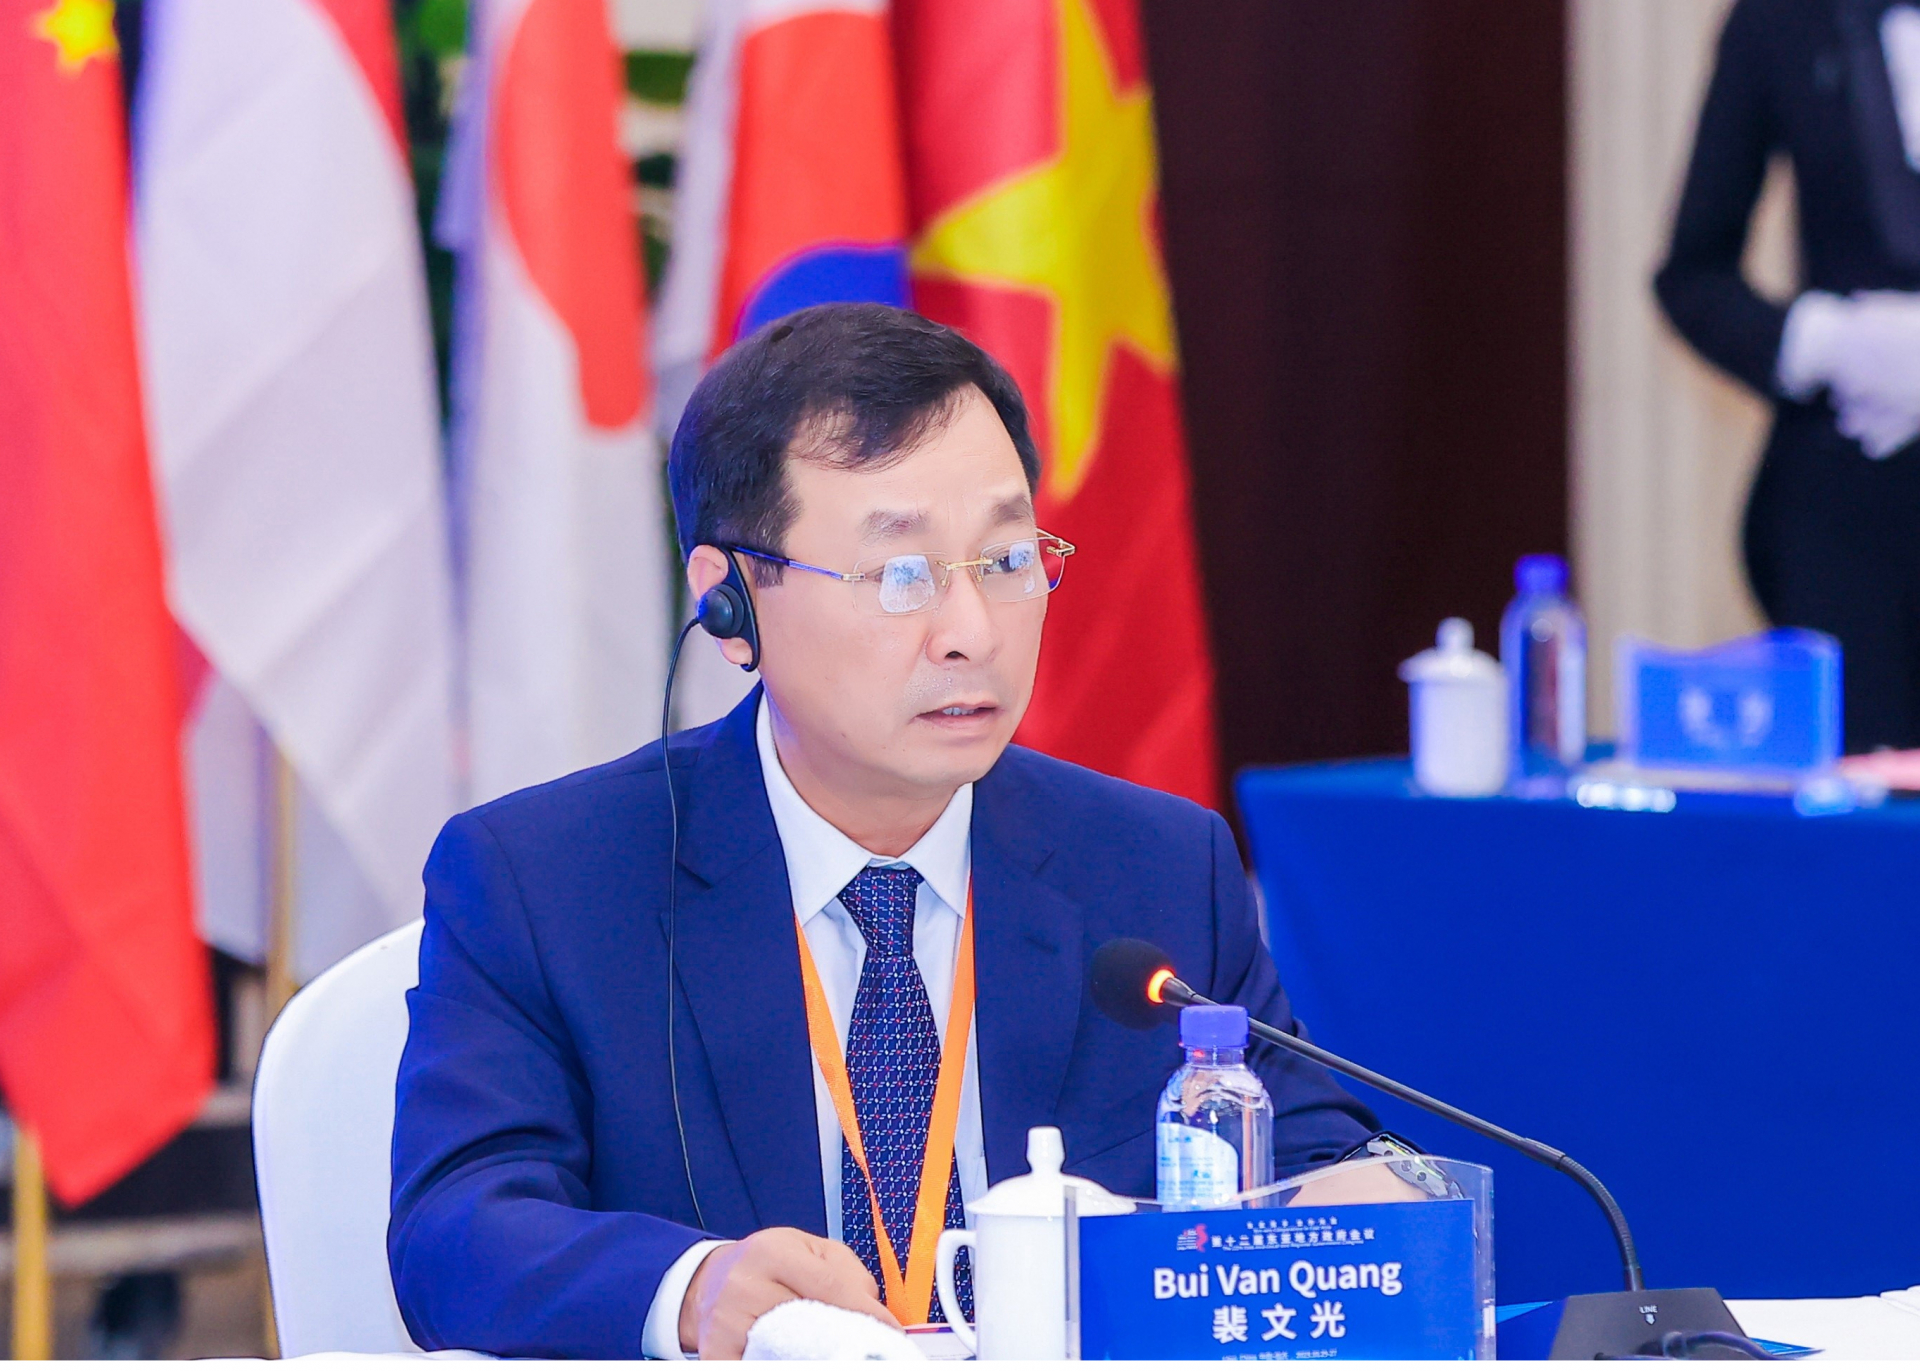 Ông Bùi Văn Quang, Chủ tịch Ủy ban nhân dân tỉnh Phú Thọ phát biểu tại hội nghị bàn tròn.